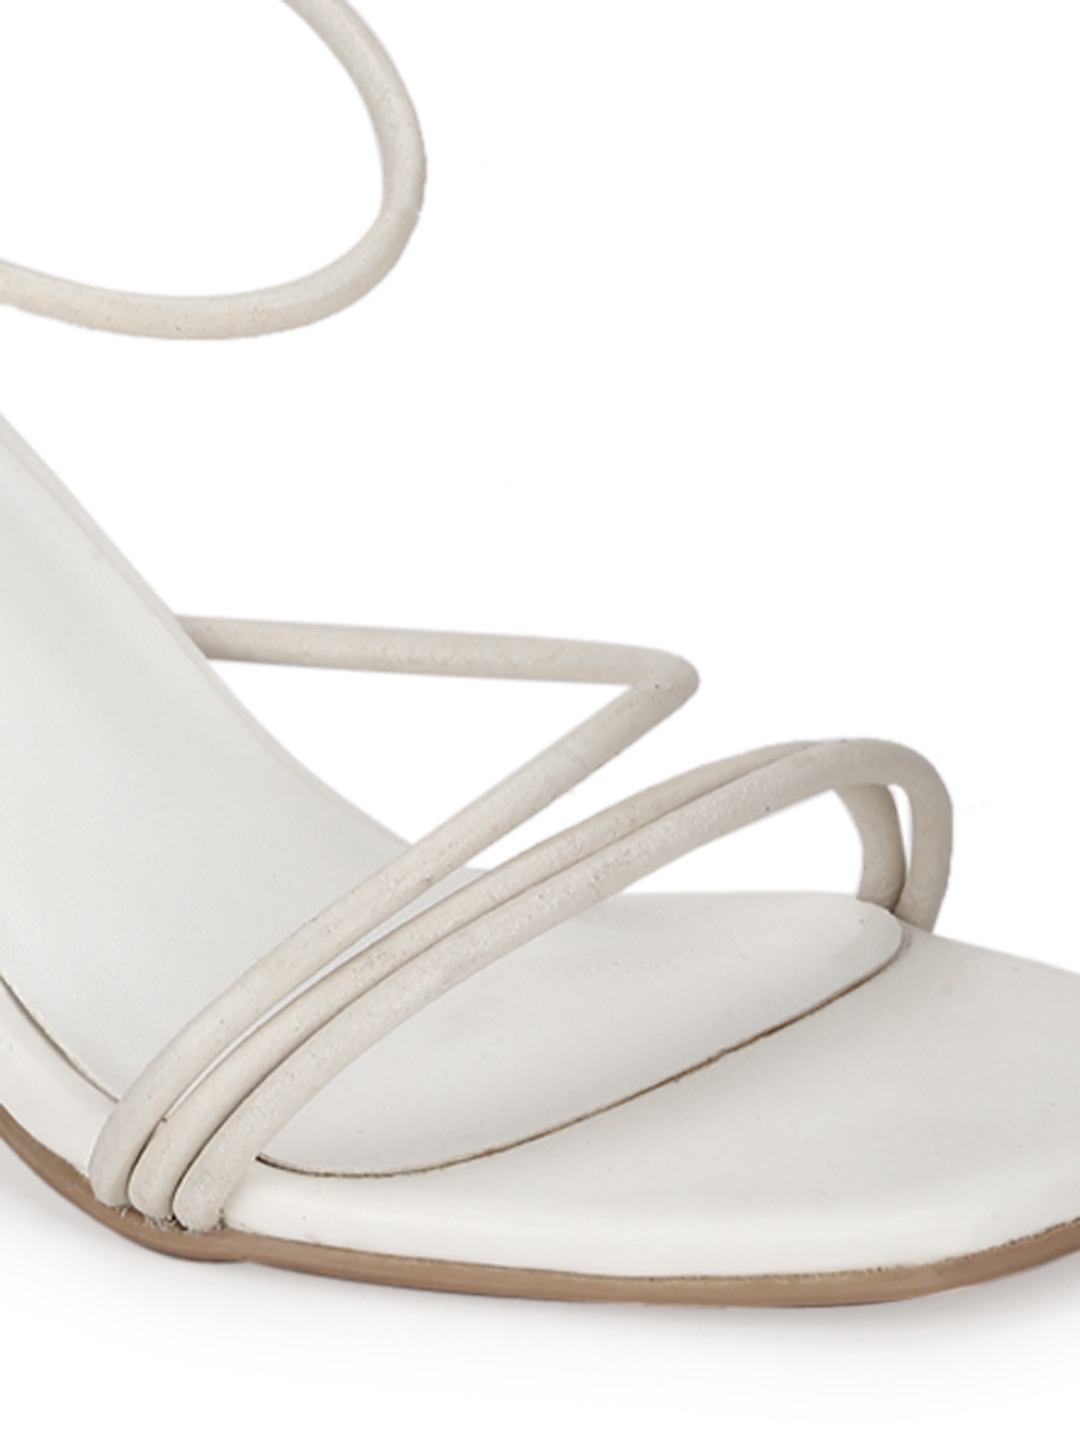 White PU Strappy Stiletto Sandals